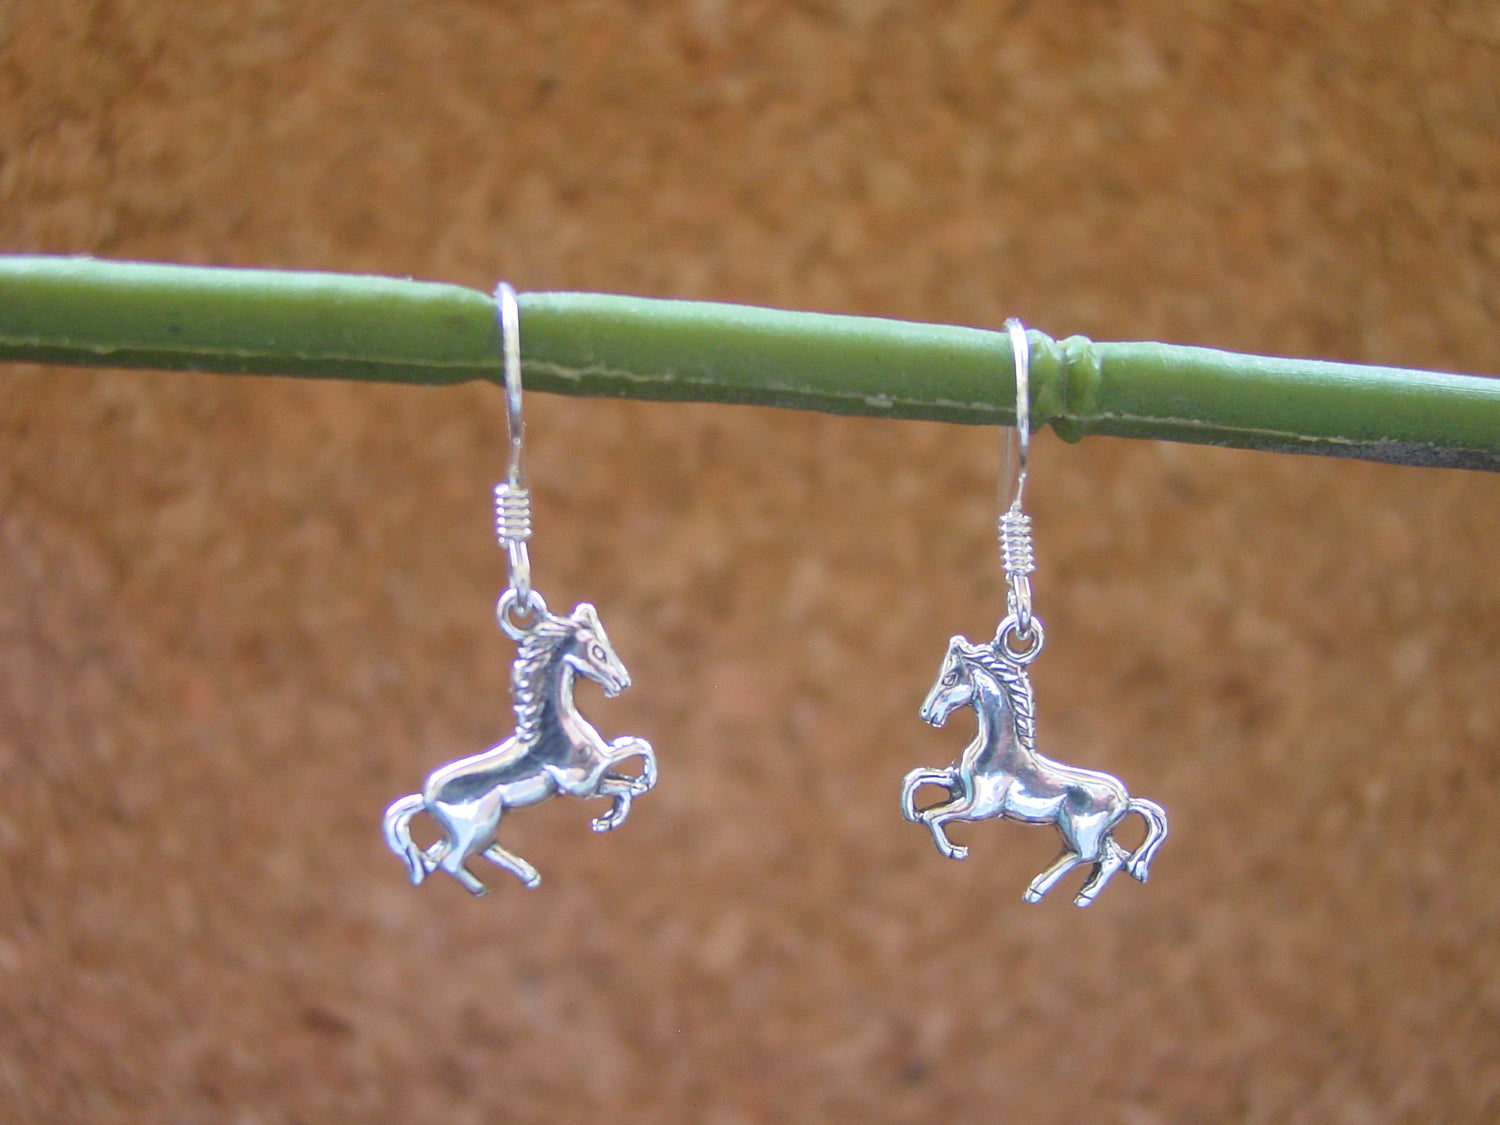 horse earrings